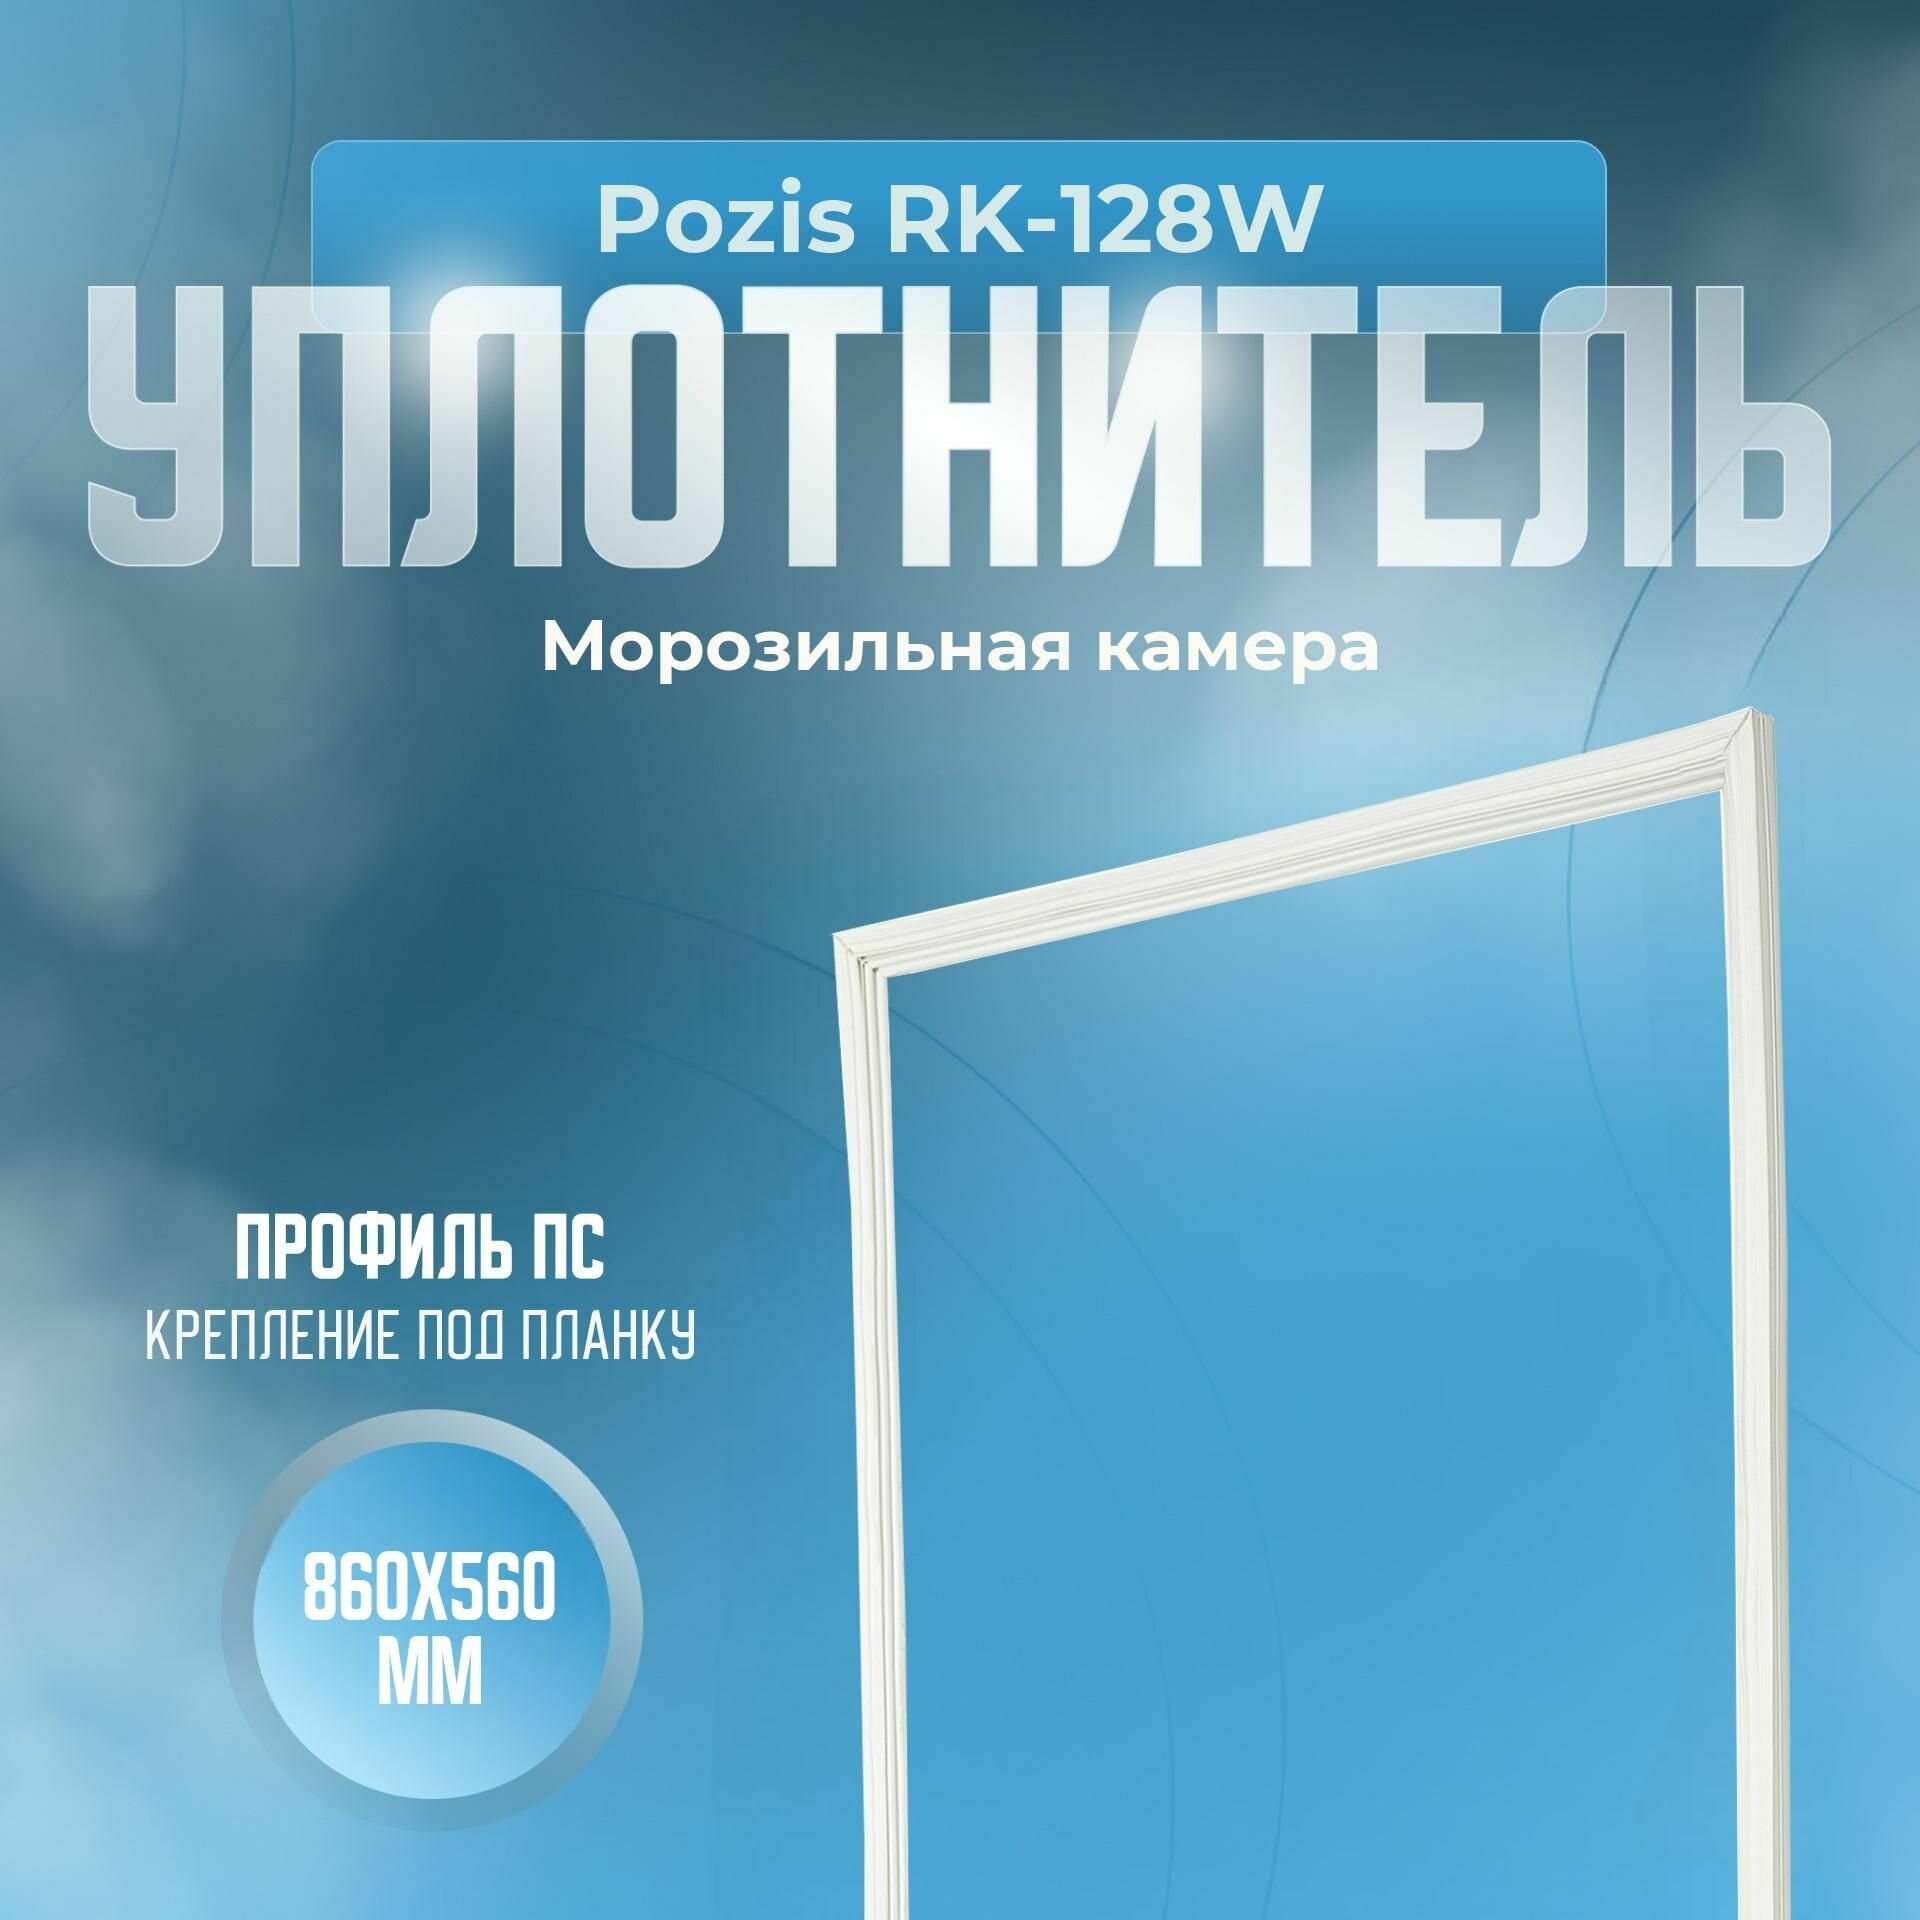 Уплотнитель Pozis RK-128W. м. к, Размер - 860x560 мм. ПС